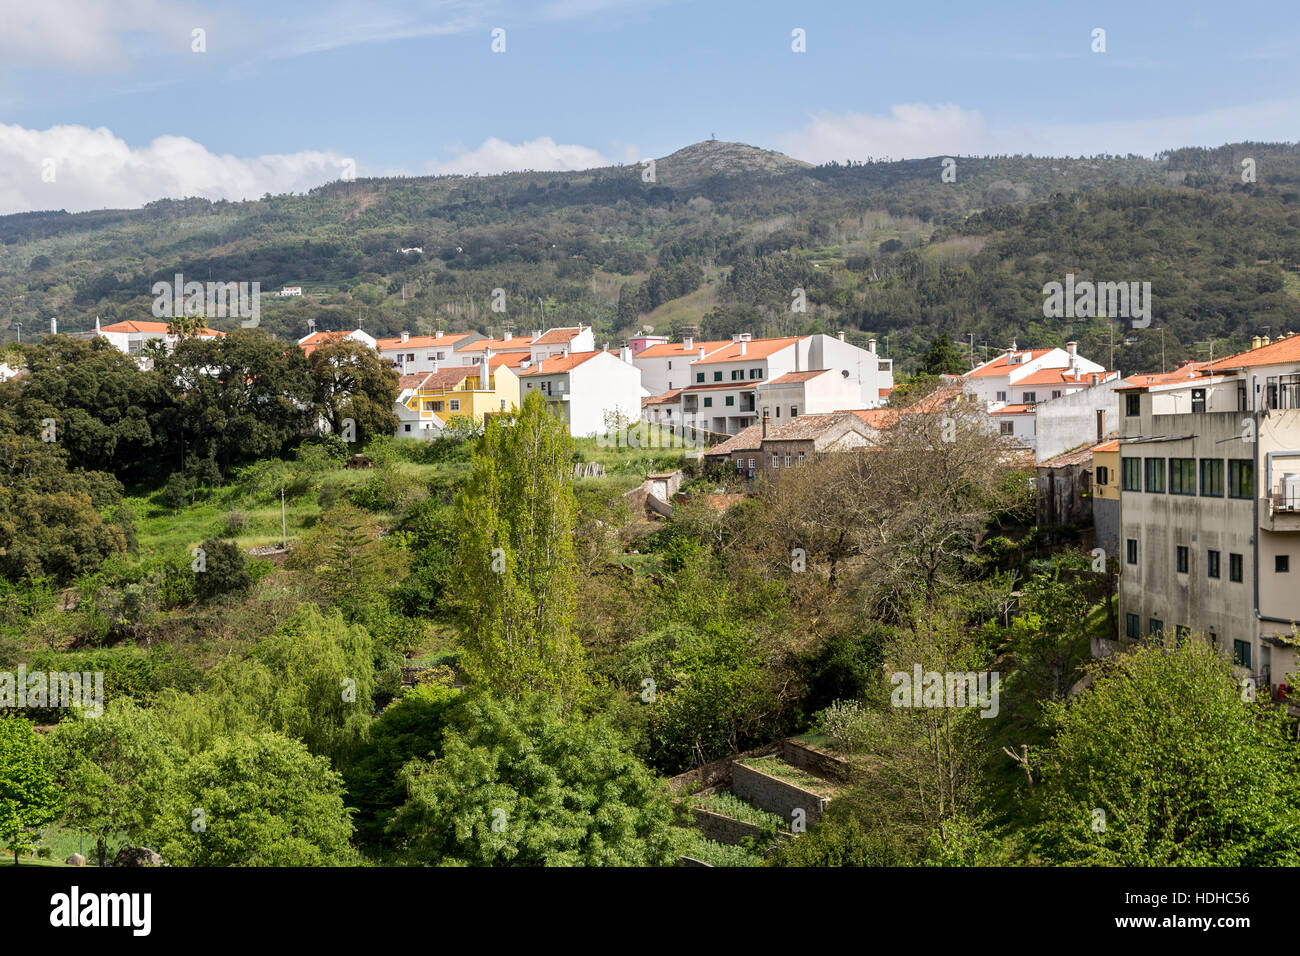 La ville de Monchique avec jardins en terrasses et de montagnes, Algarve, Portugal Banque D'Images